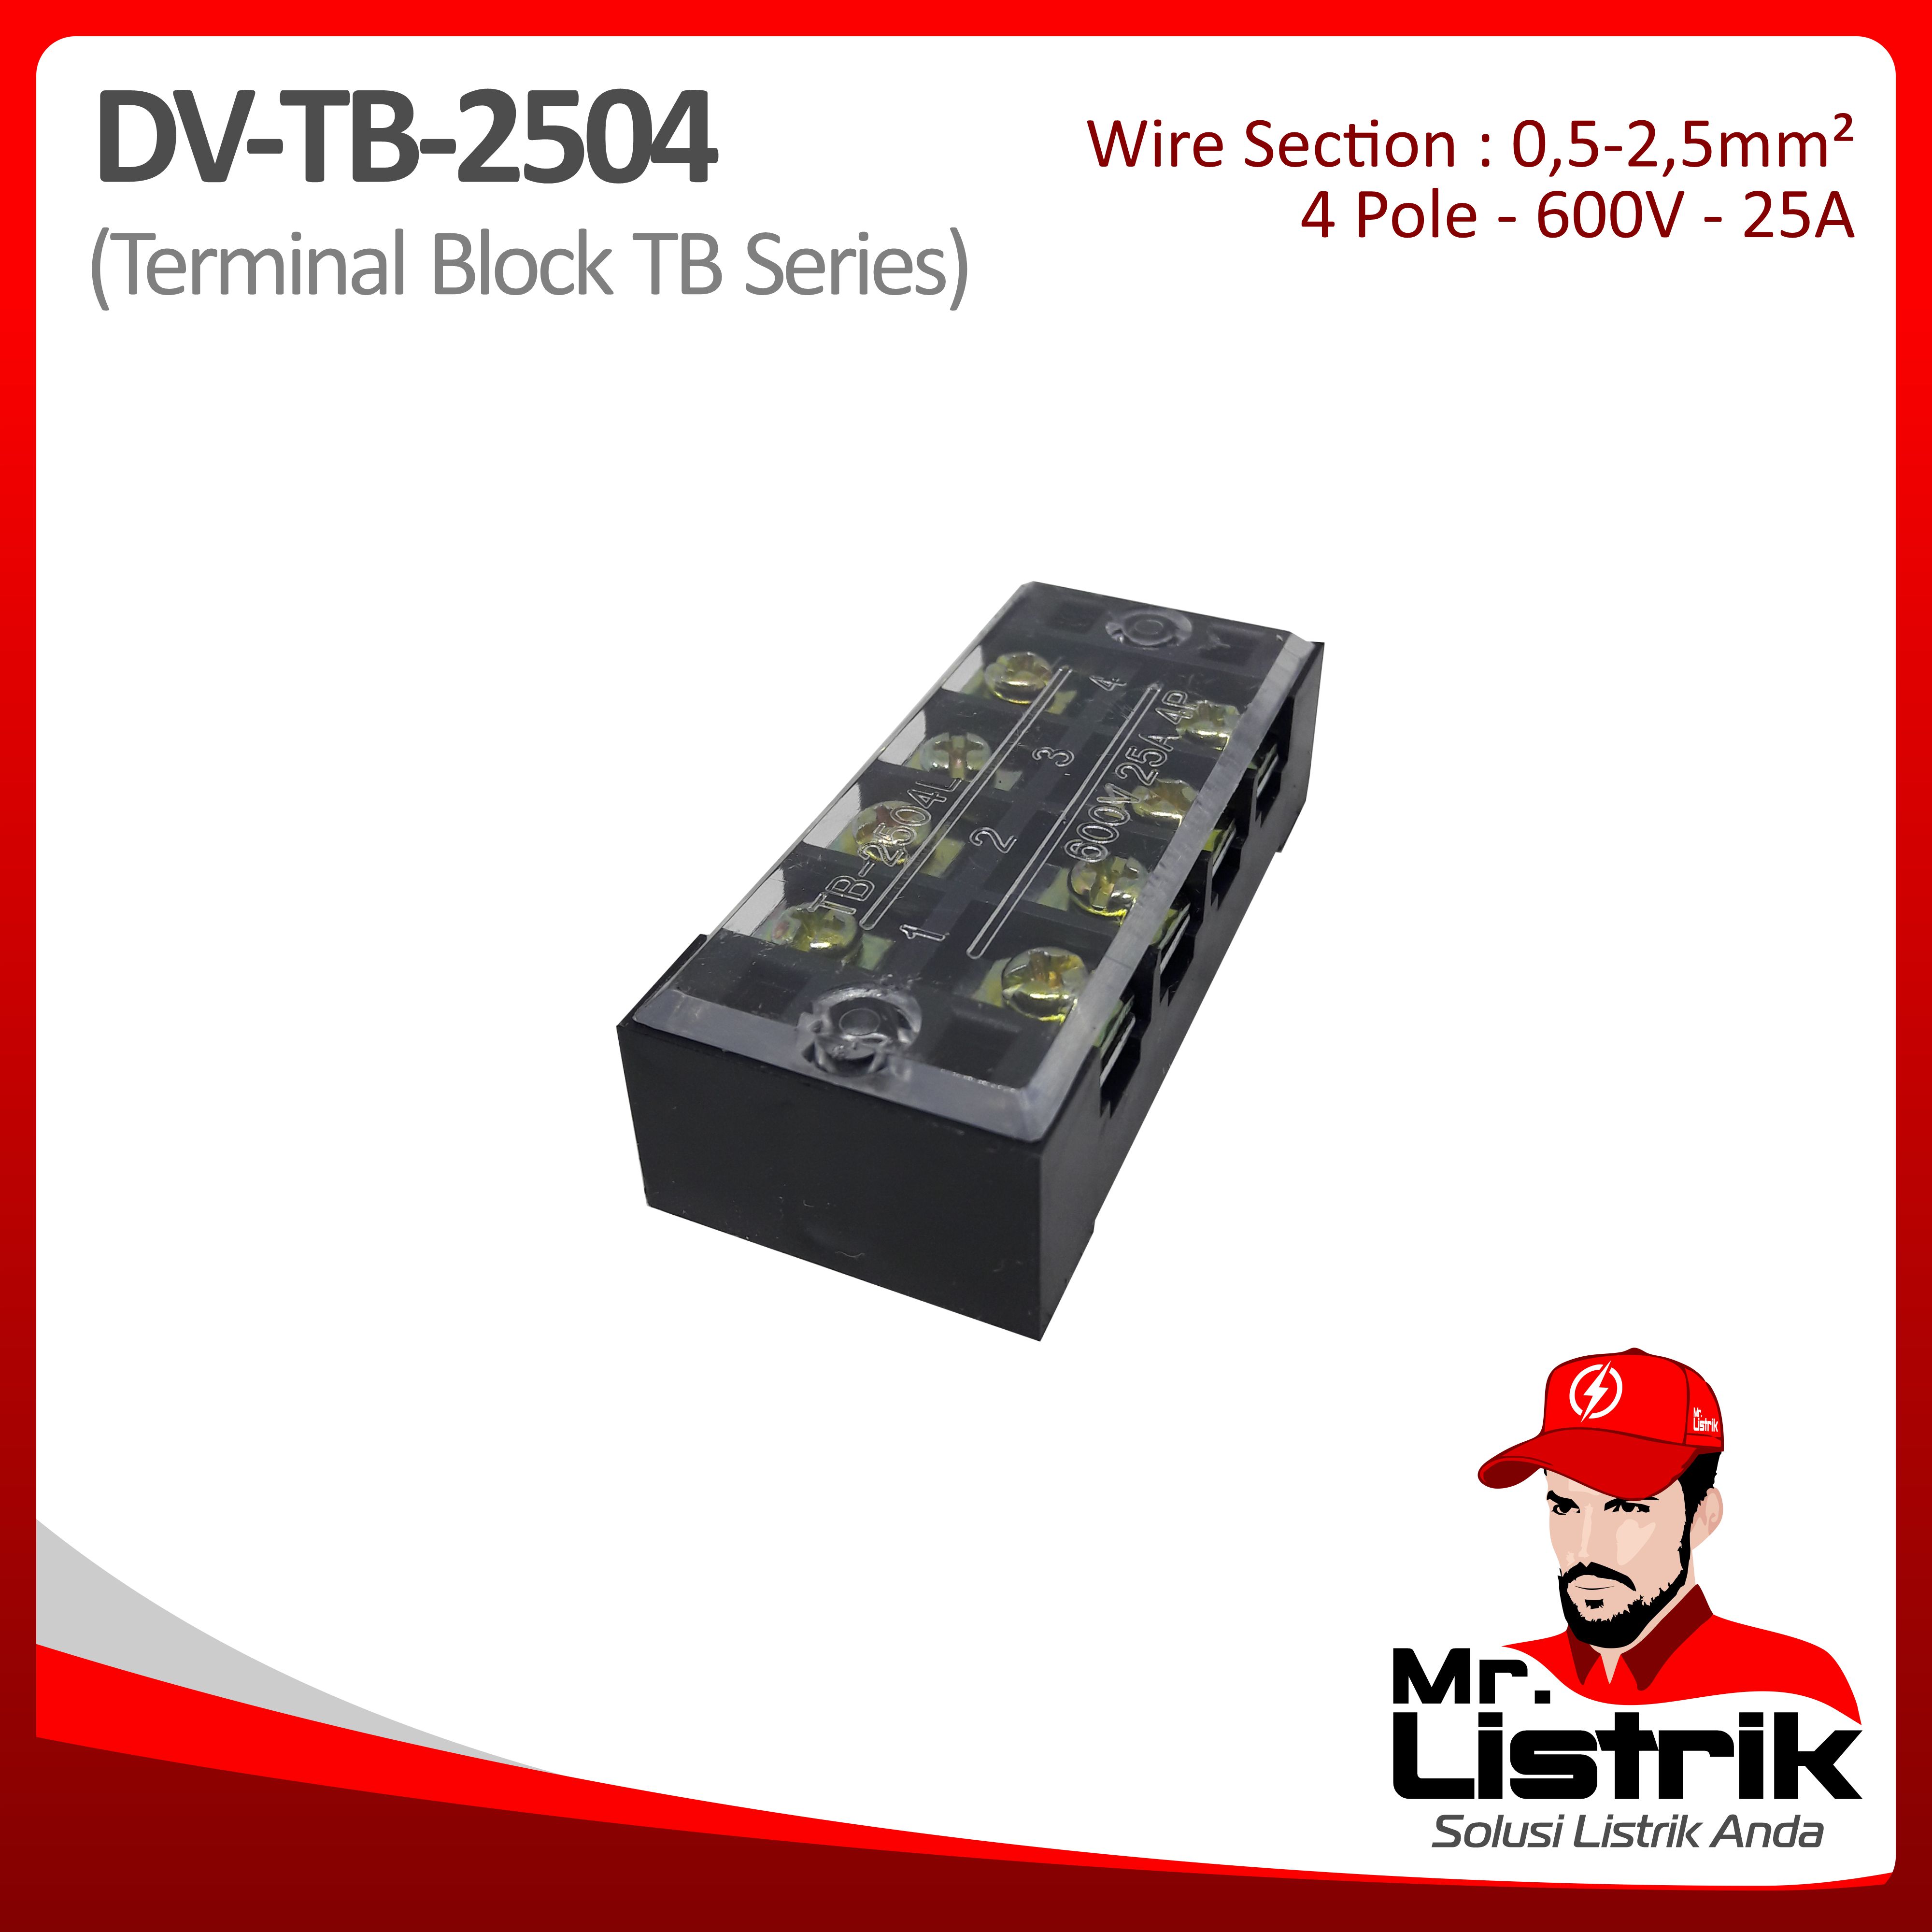 Terminal Block TB Series 4P 25A DV TB-2504